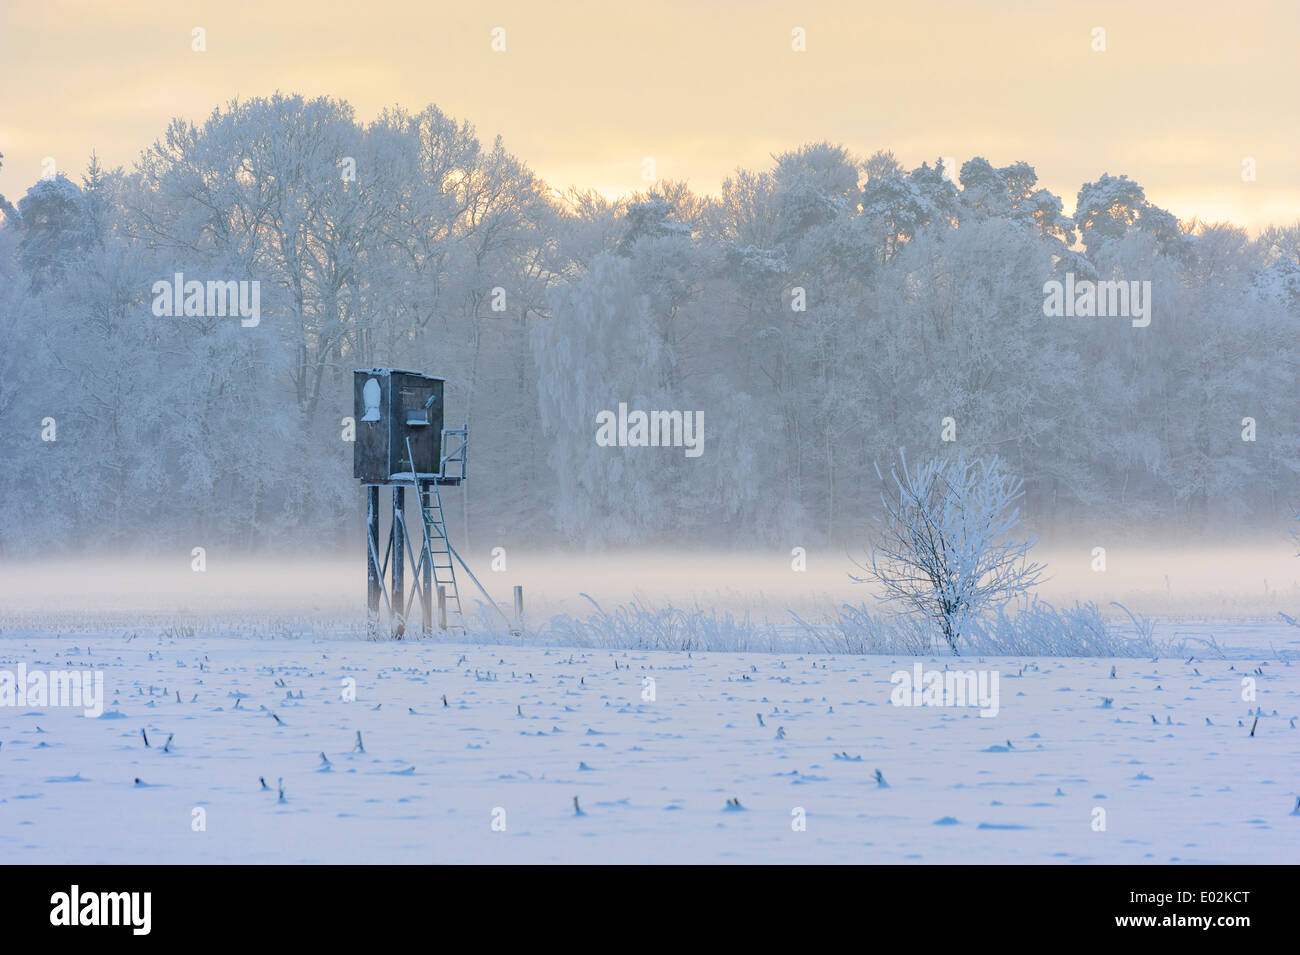 Nascondi in inverno, vechta distretto, Bassa Sassonia, Germania Foto Stock